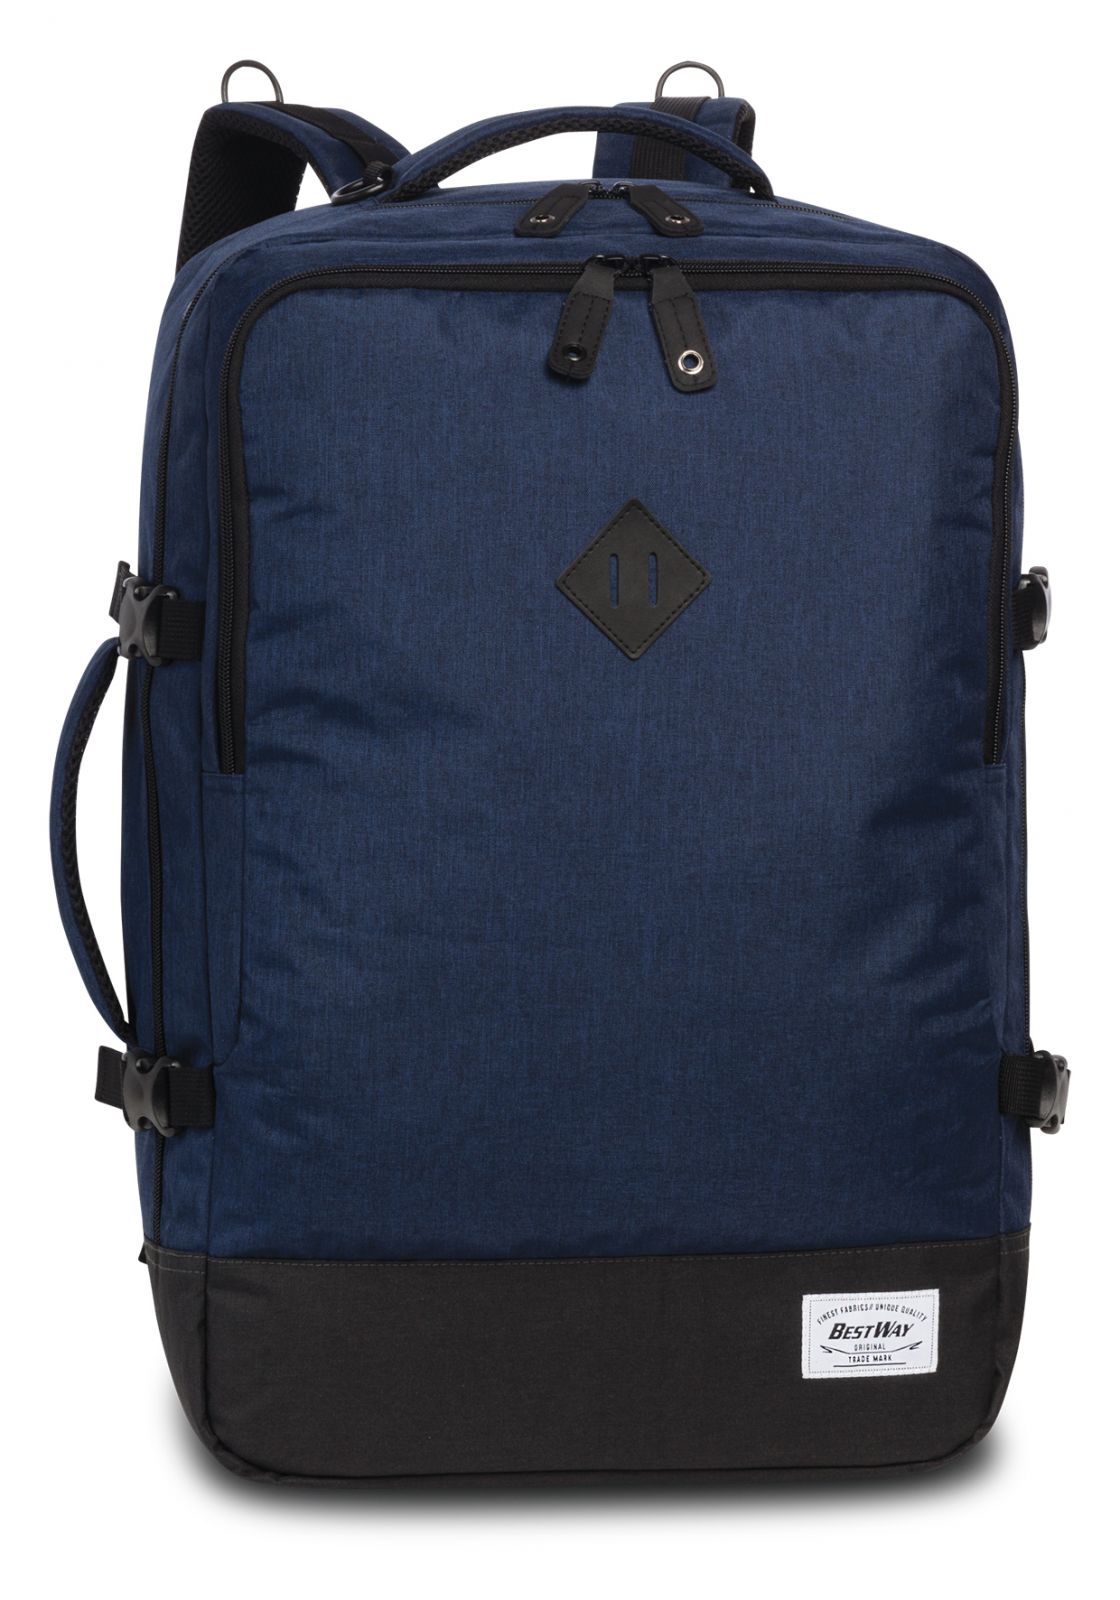 BestWay Příruční zavazadlo - batoh Cabin PRO 54x35x20 navy blue